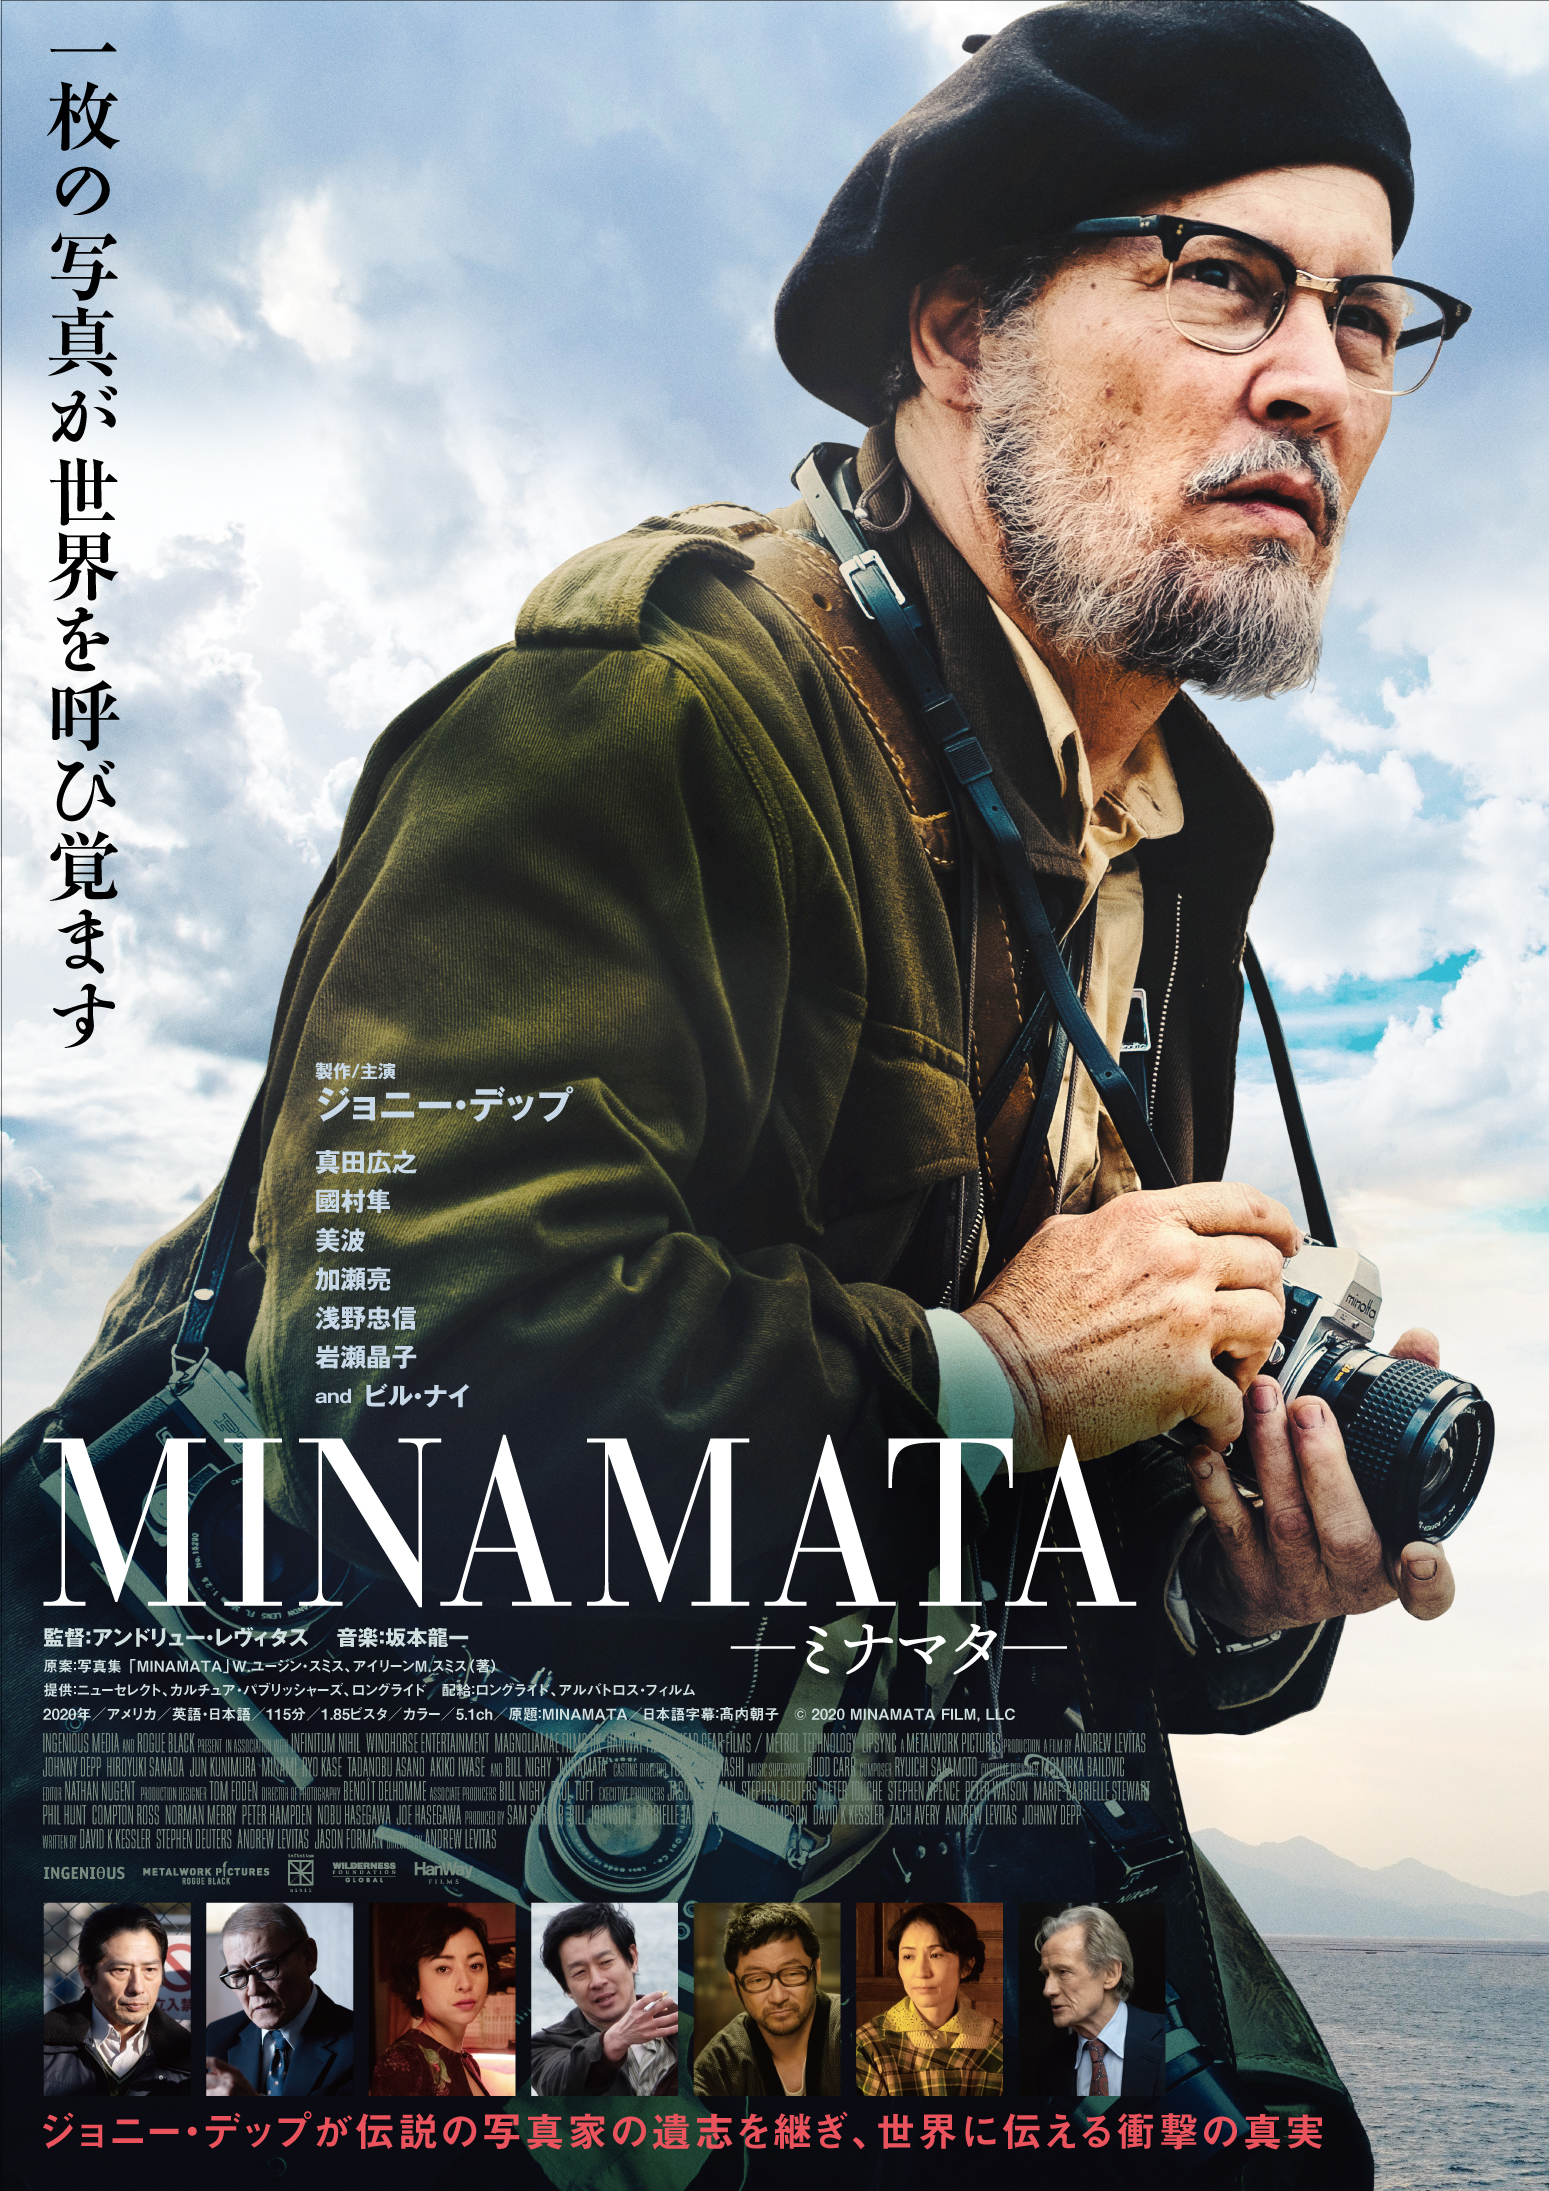 ジョニー デップ最新作 Minamata ミナマタ が映画の舞台 水俣市で 日本最速 先行プレミア上映決定 Weekend Cinema